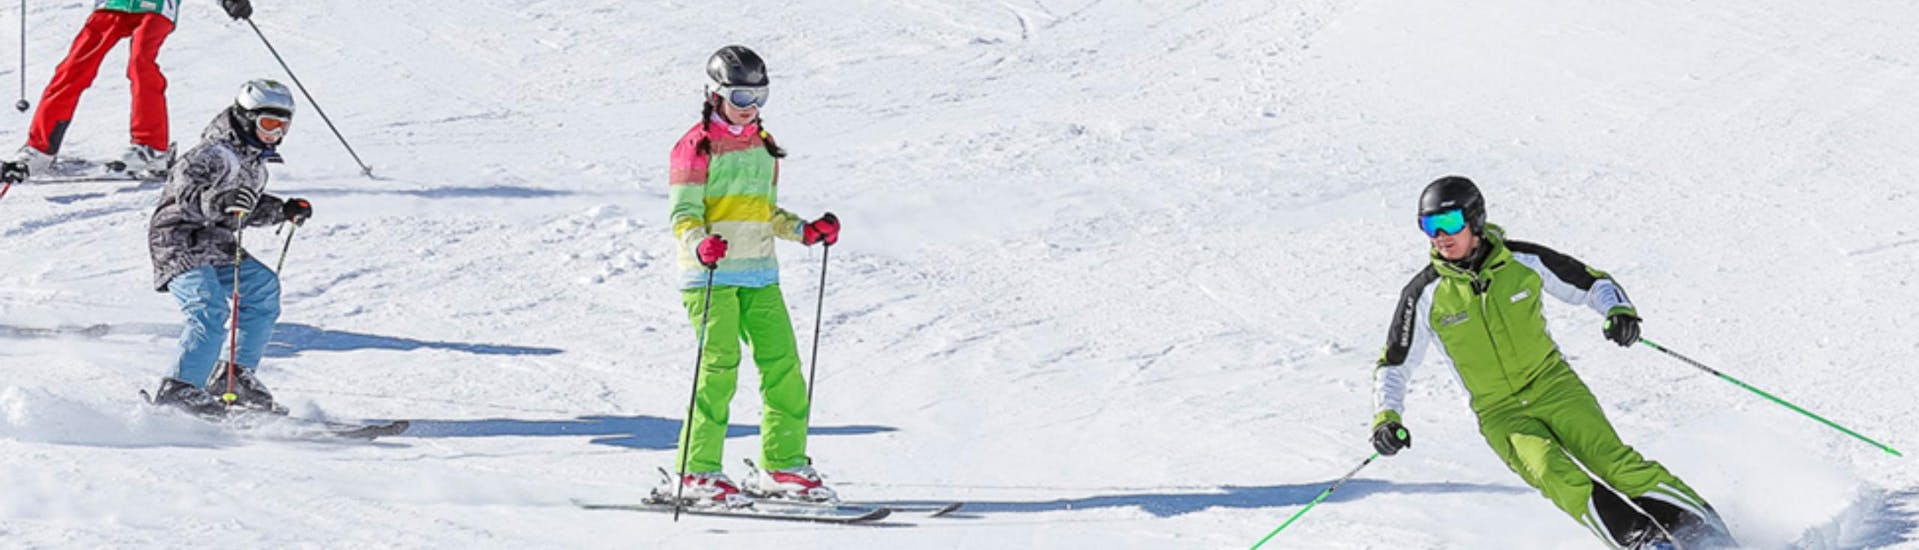 Lezioni di sci per bambini a partire da 11 anni per tutti i livelli.